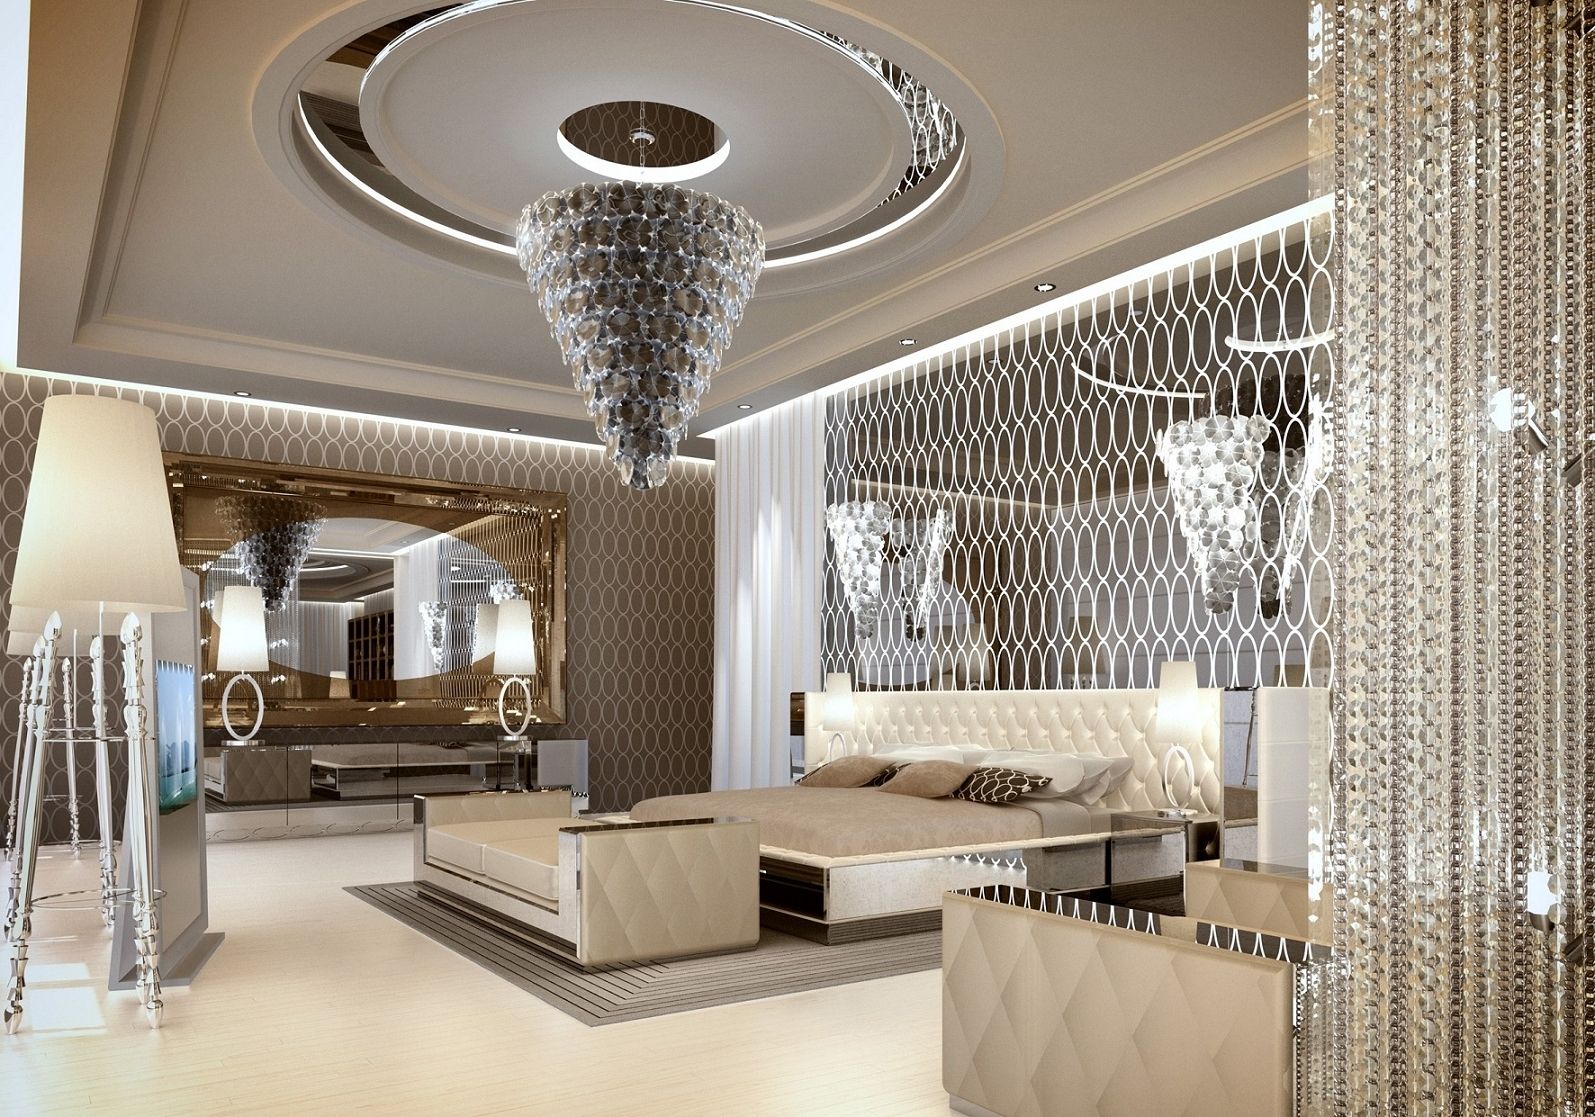 Popular Luxury Bedrooms With Magnificent Chandeliers Regarding Bedroom Chandeliers (View 1 of 15)